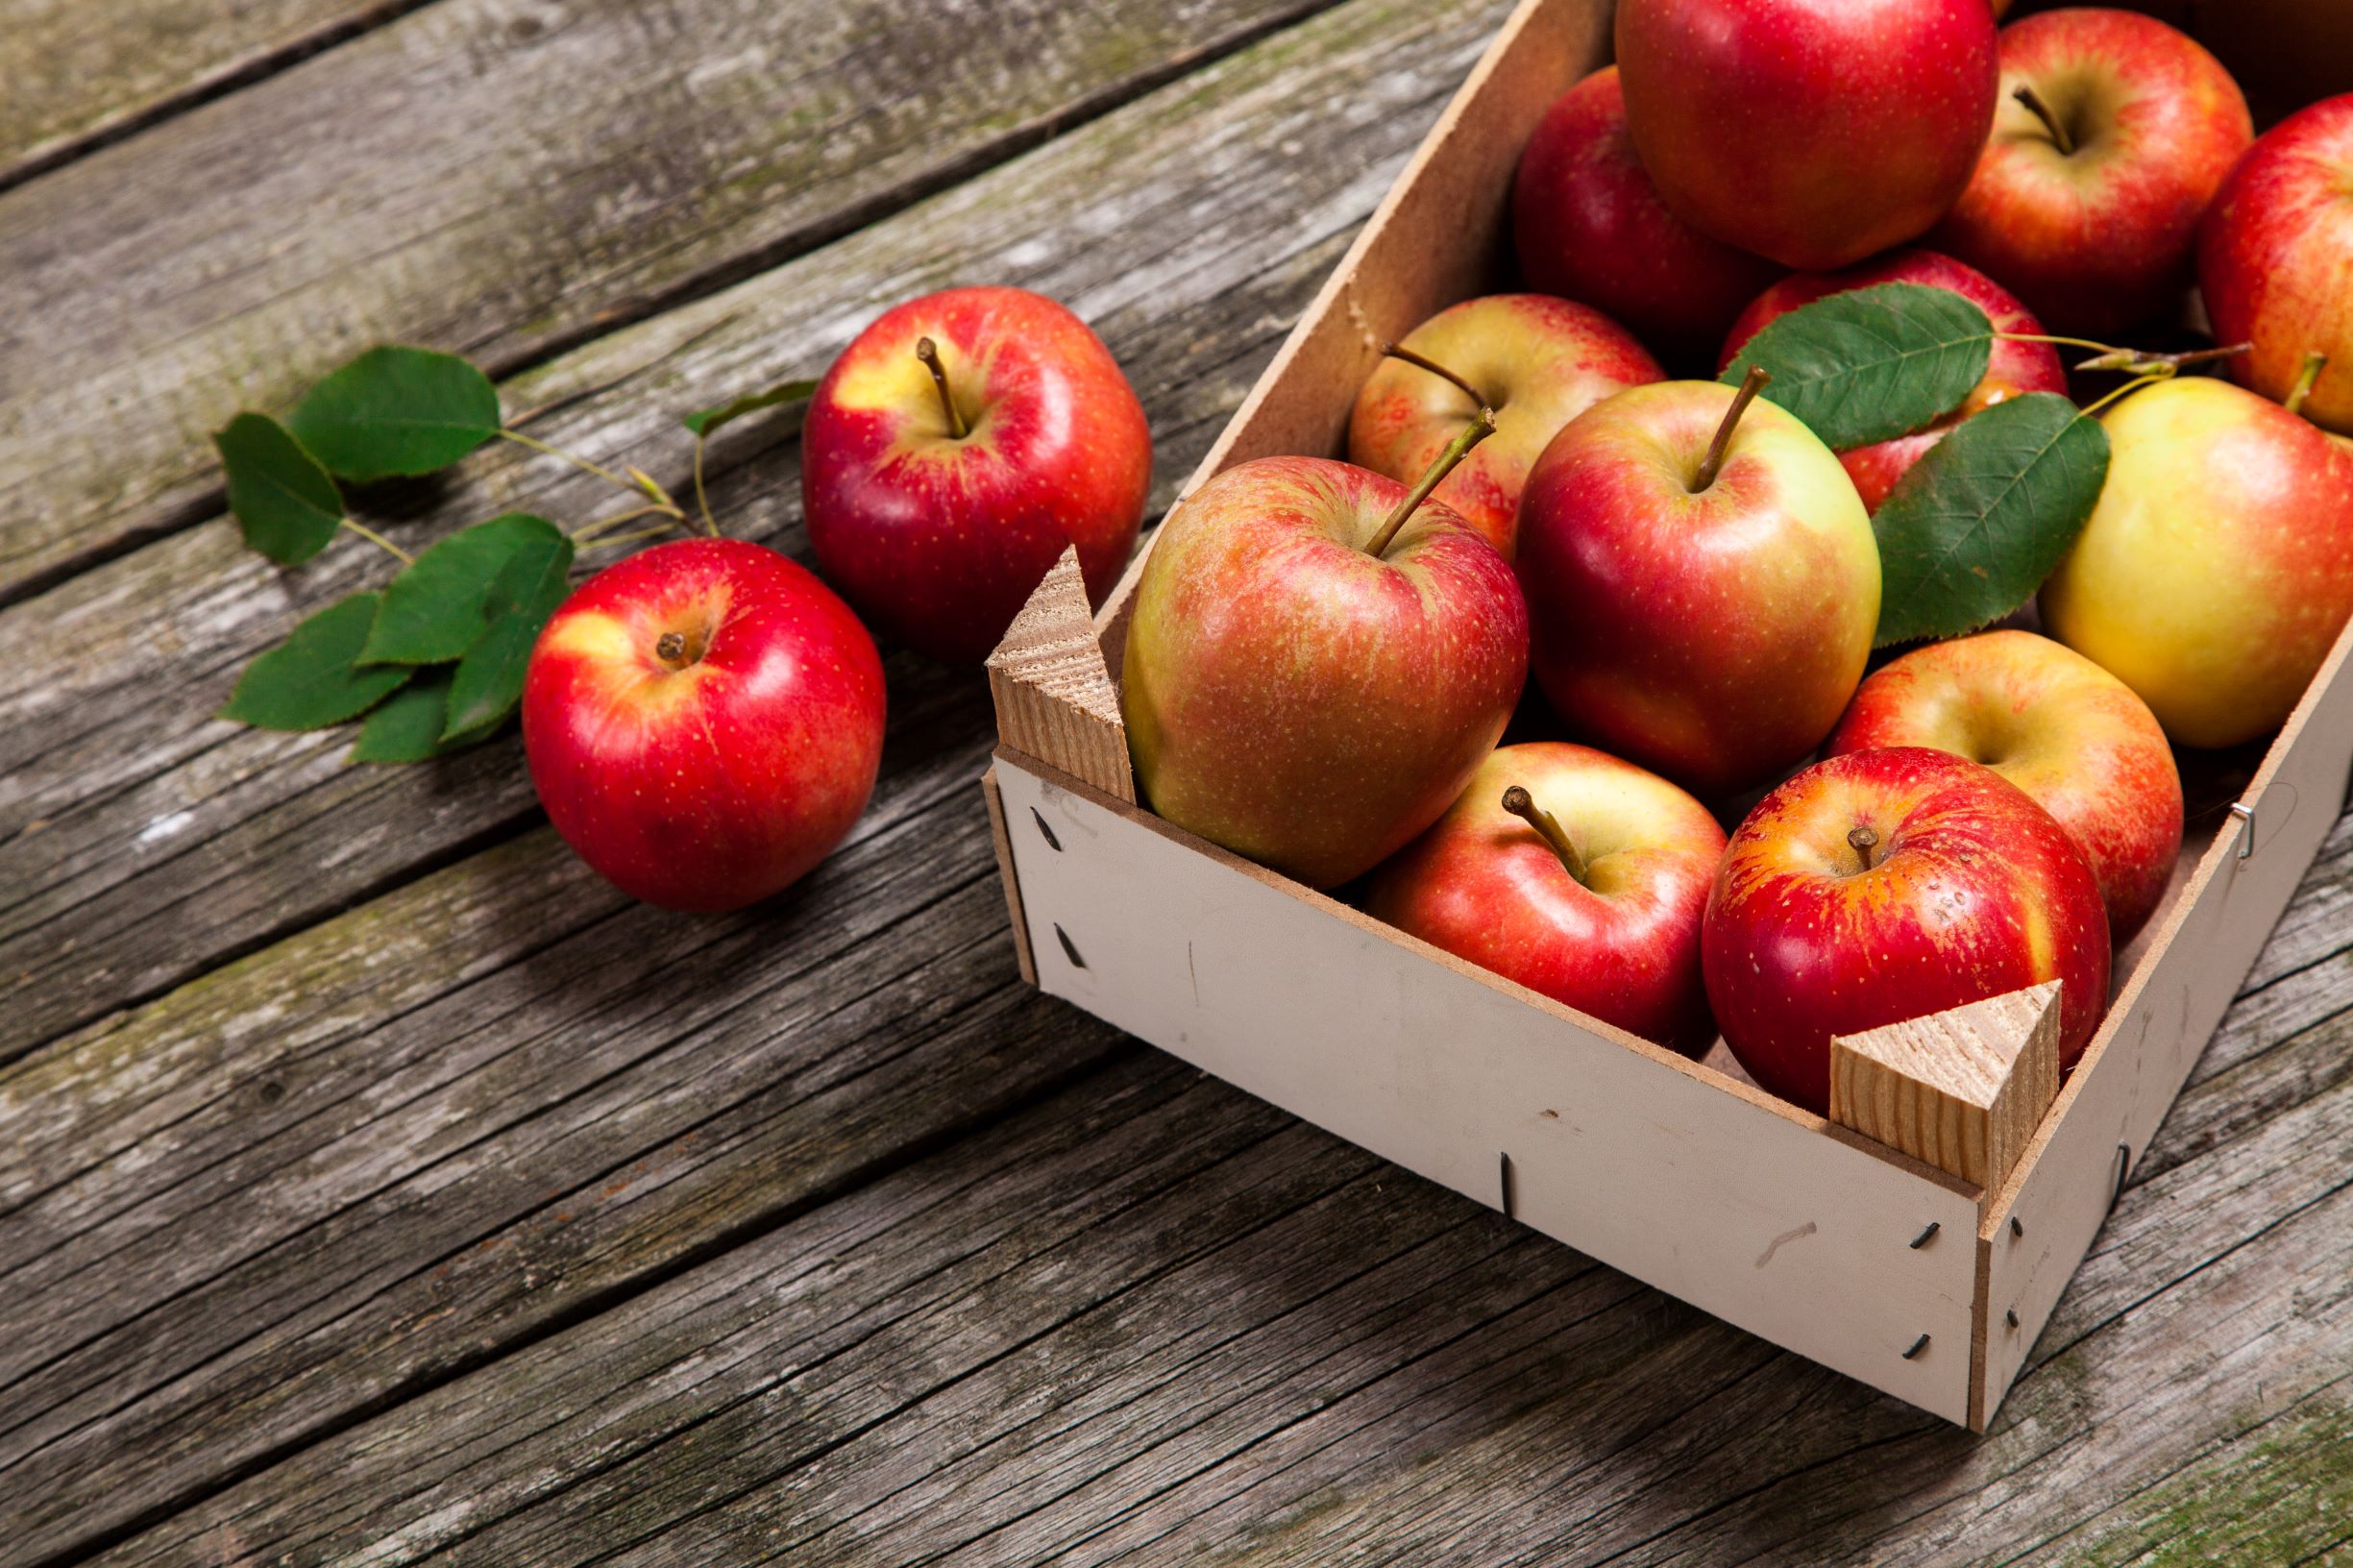 Яблоки обладают противовоспалительными свойствами и снижают уровень холестерина. 